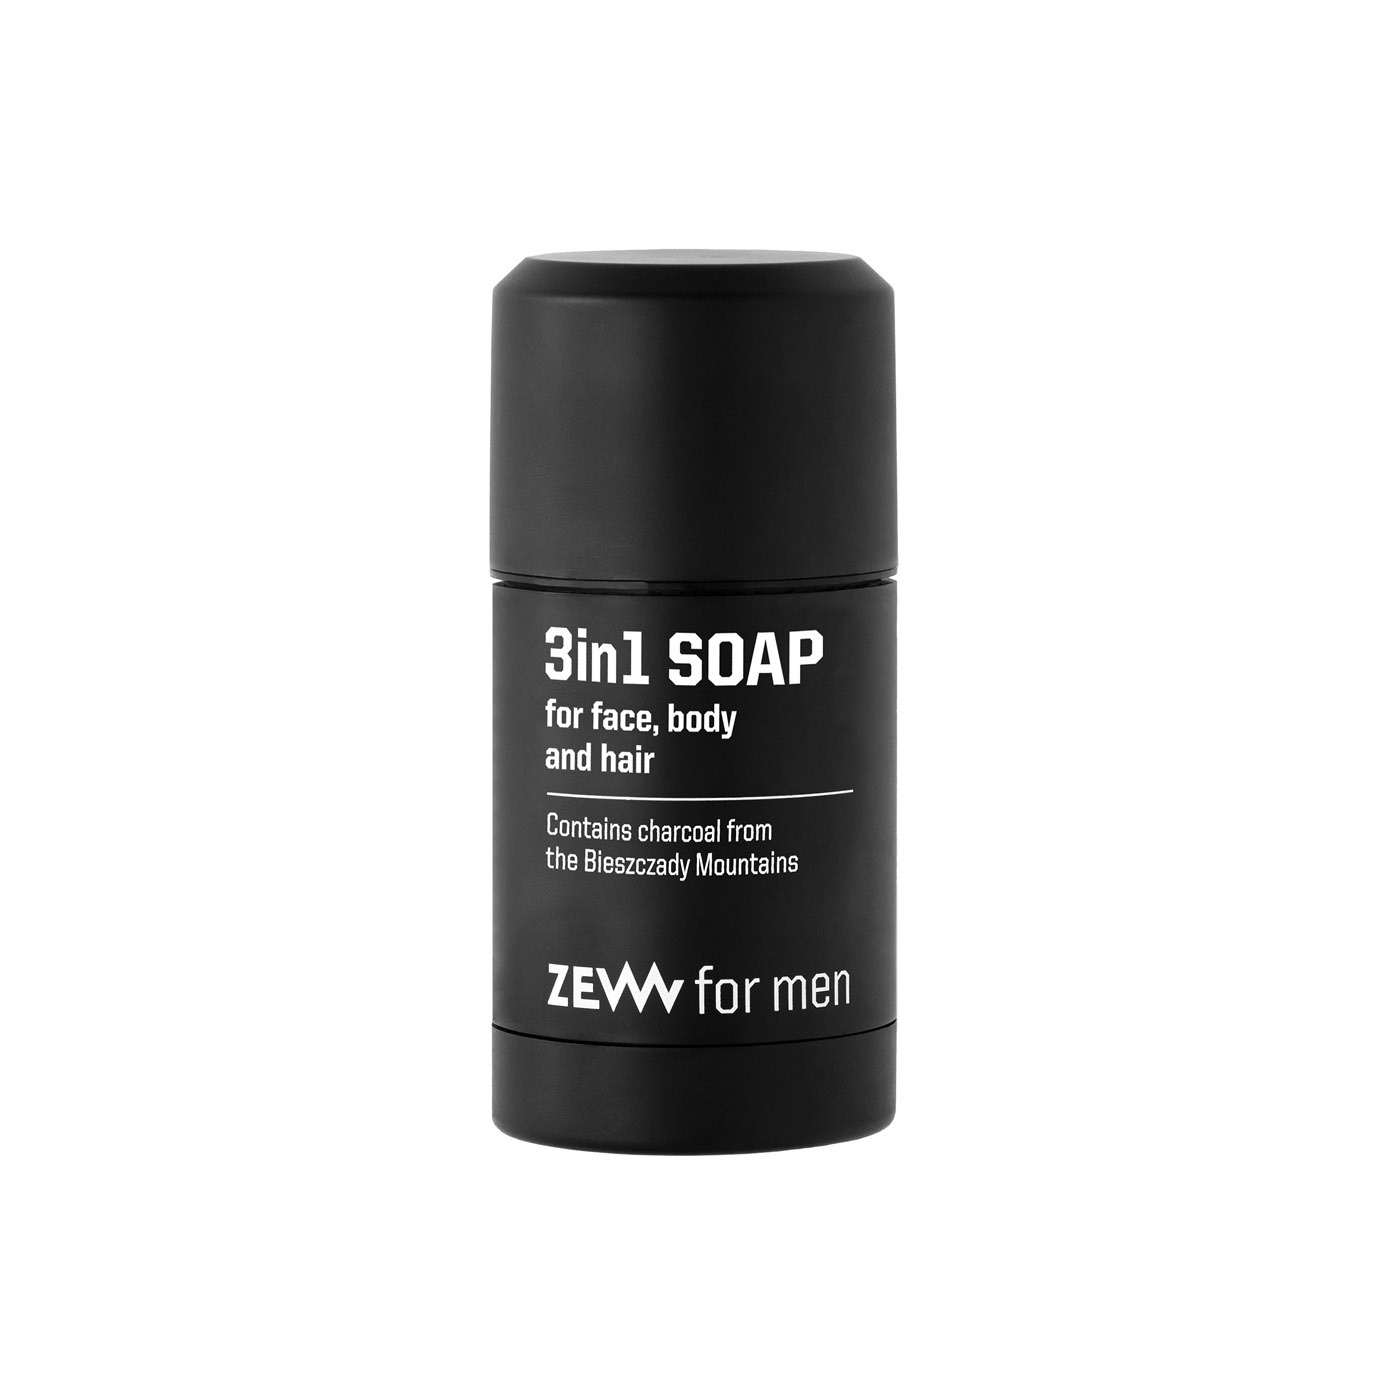 ZEW for men 3 in 1 soap: body, face and hair - mýdlo 3v1 na tělo, obličej a vlasy s dřevěným uhlím, 85 ml + Kapsa M